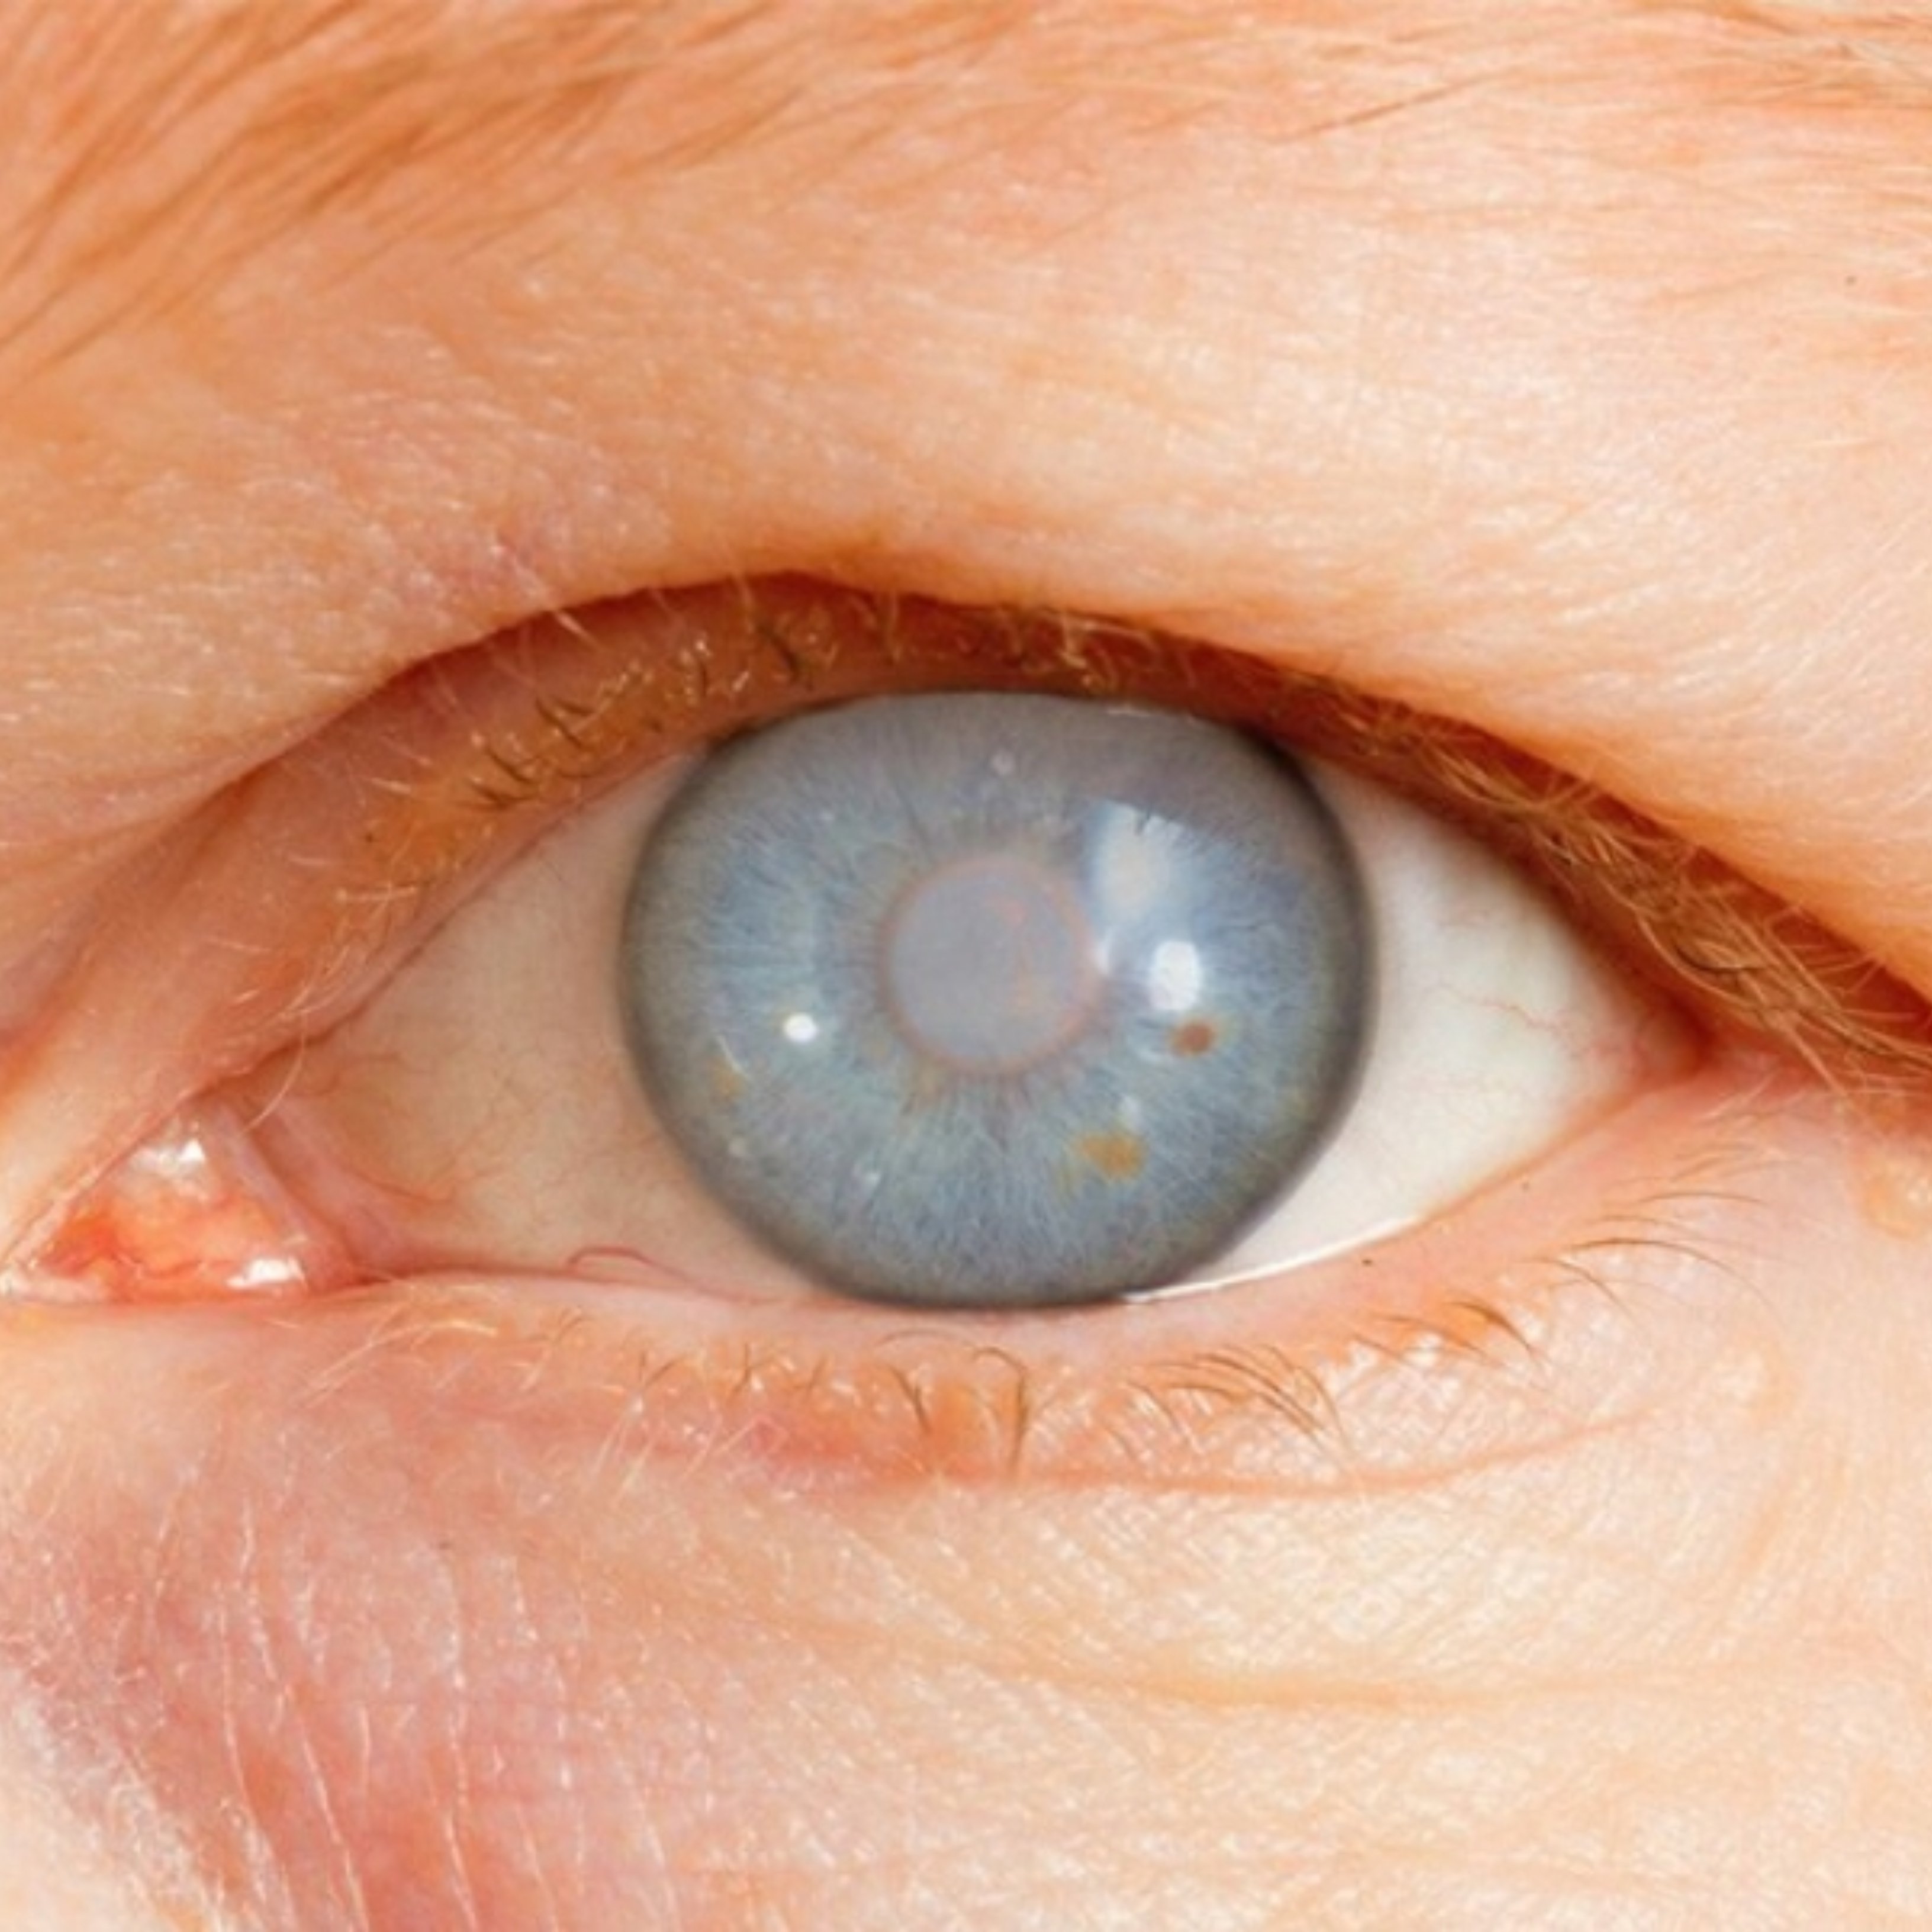 Signos de que puedes estar padeciendo glaucoma